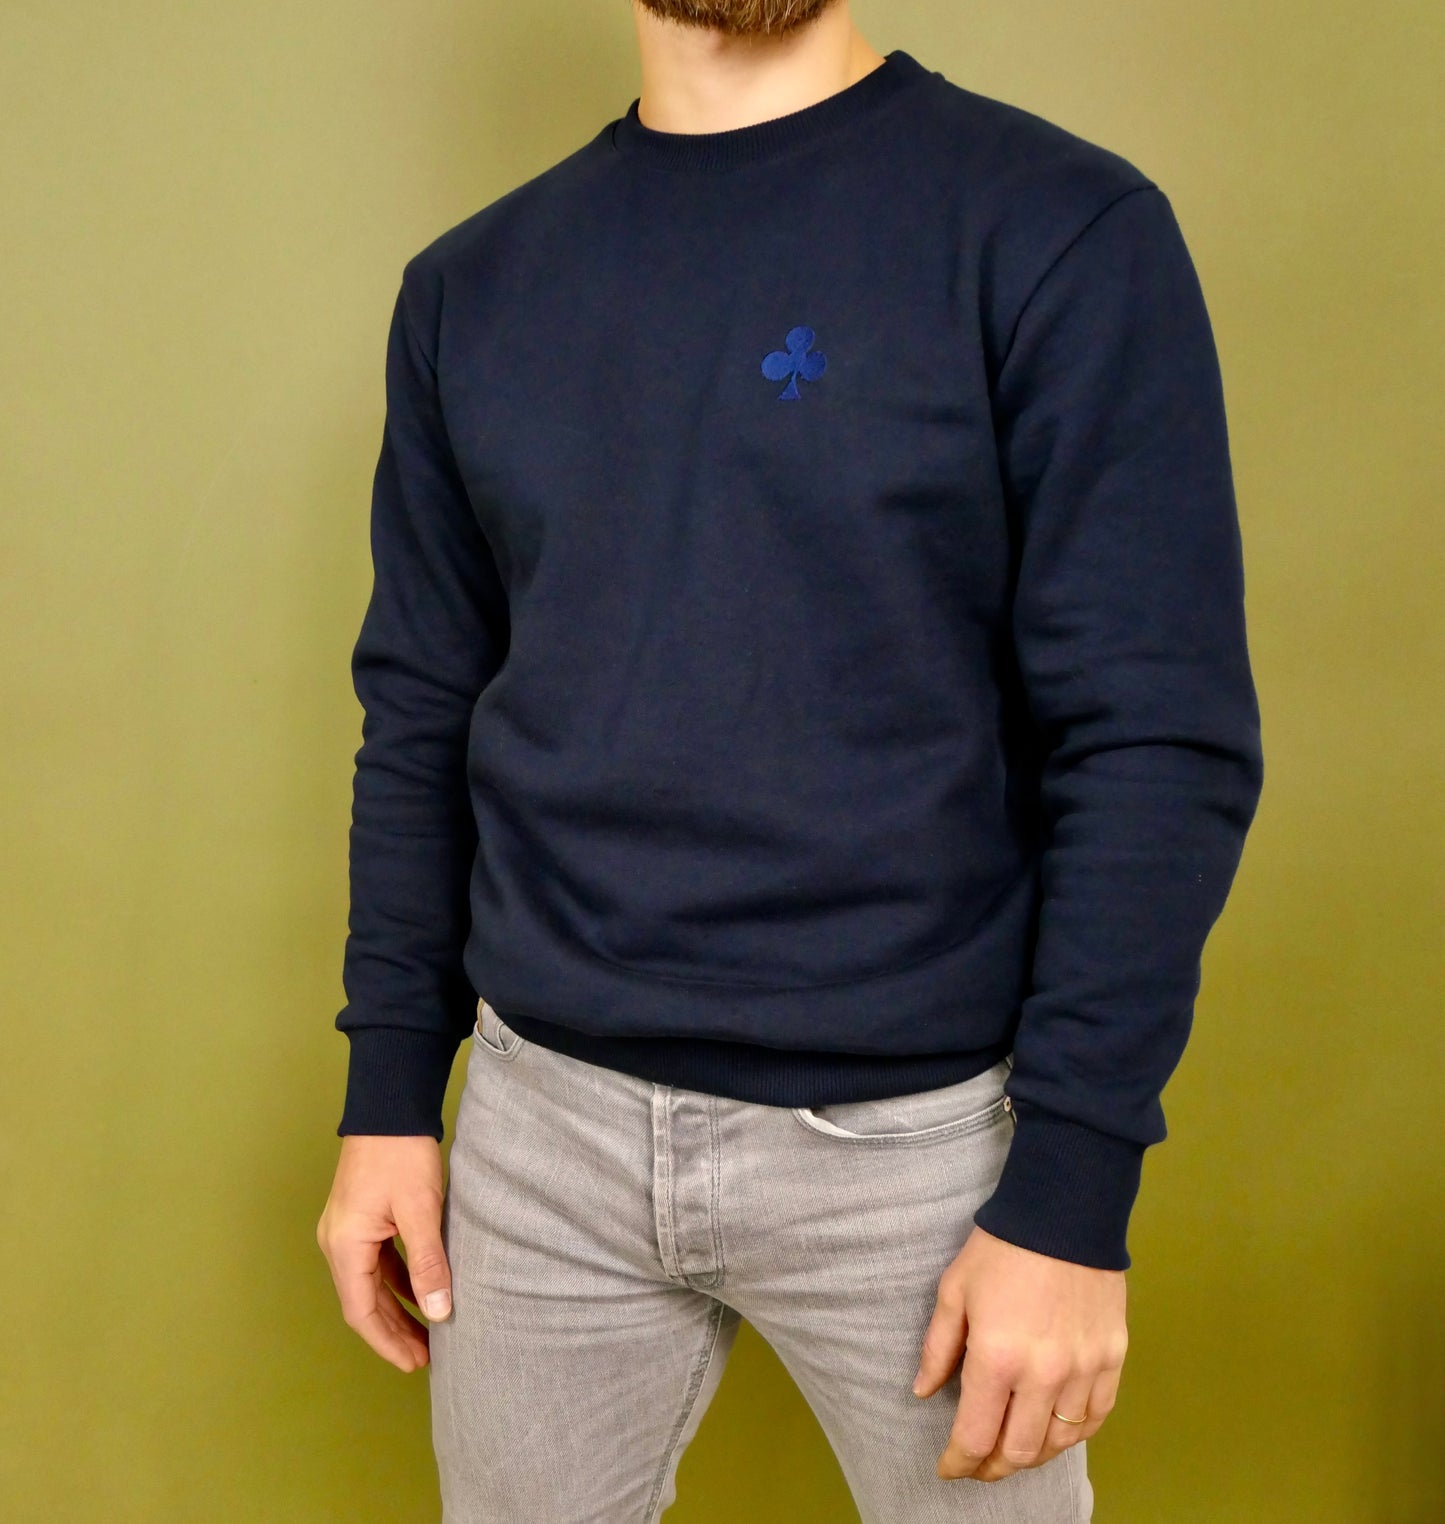 monsieurbarr sweatshirt fabriqué au portugal trèfle bleu